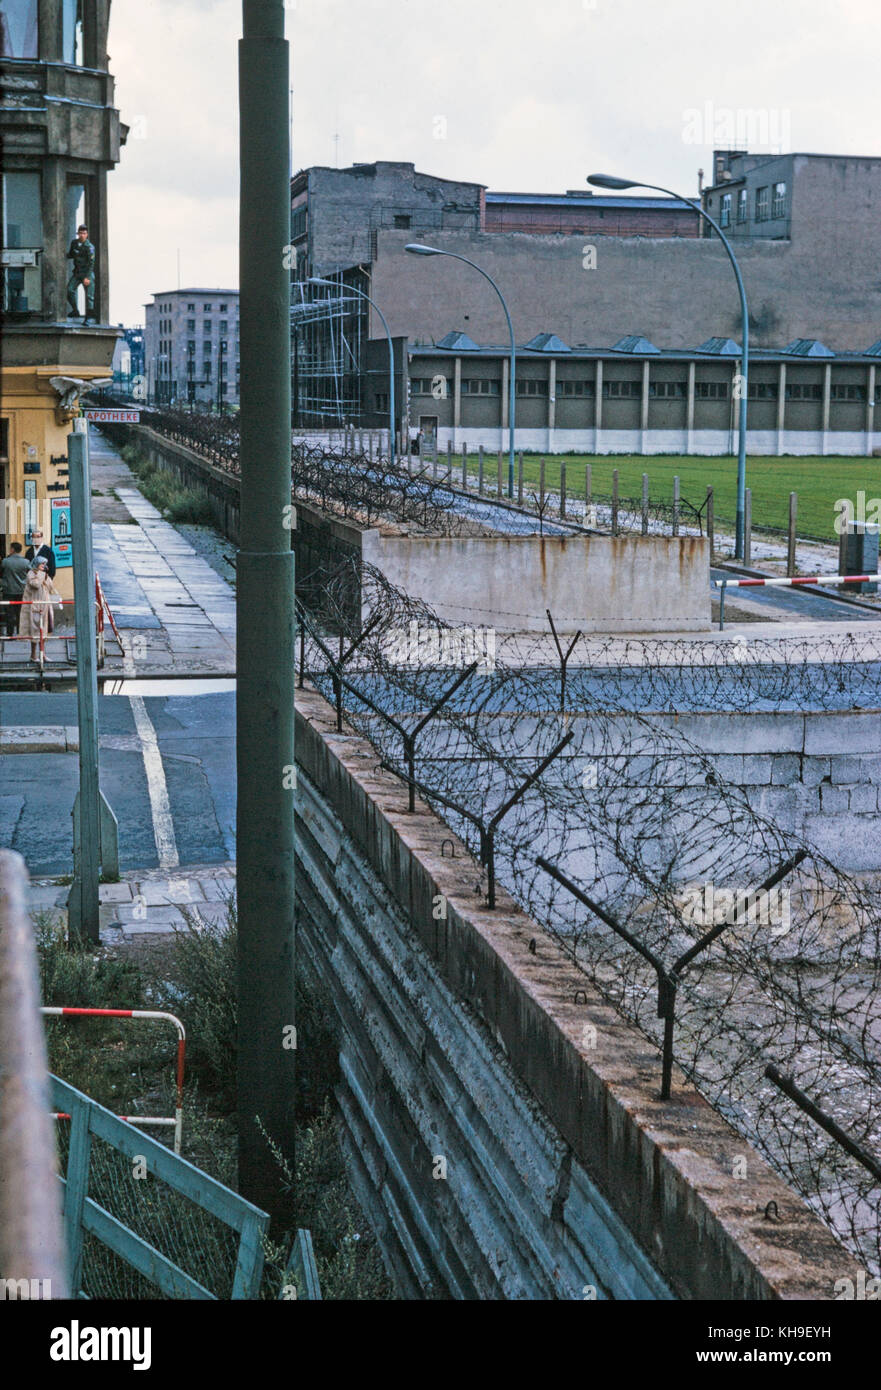 Voir la recherche à travers le mur de Berlin de l'Allemagne de l'Ouest à l'Allemagne de l'est en août 1965. Le mur est couvert de barbelés et d'une femme touriste, c'est de prendre une photo avec un soldat qui apparaissent à partir d'une fenêtre à l'étage d'un immeuble voisin. Banque D'Images